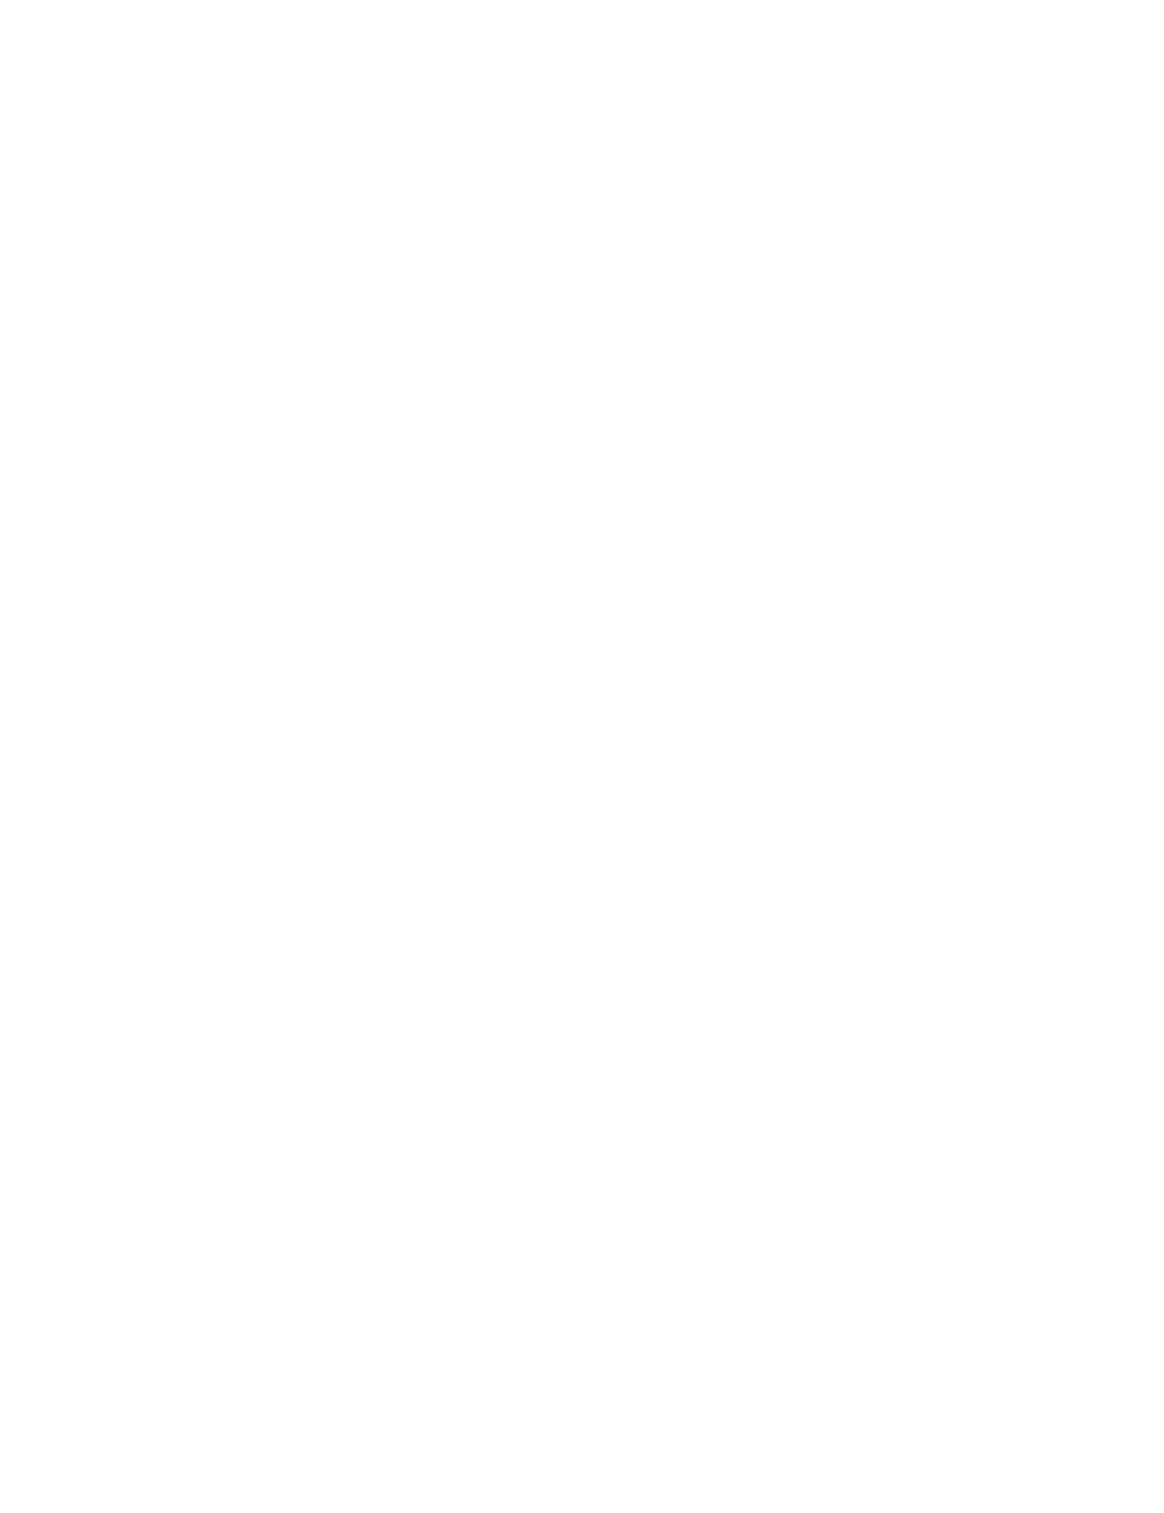 Bezeq logo large for dark backgrounds (transparent PNG)